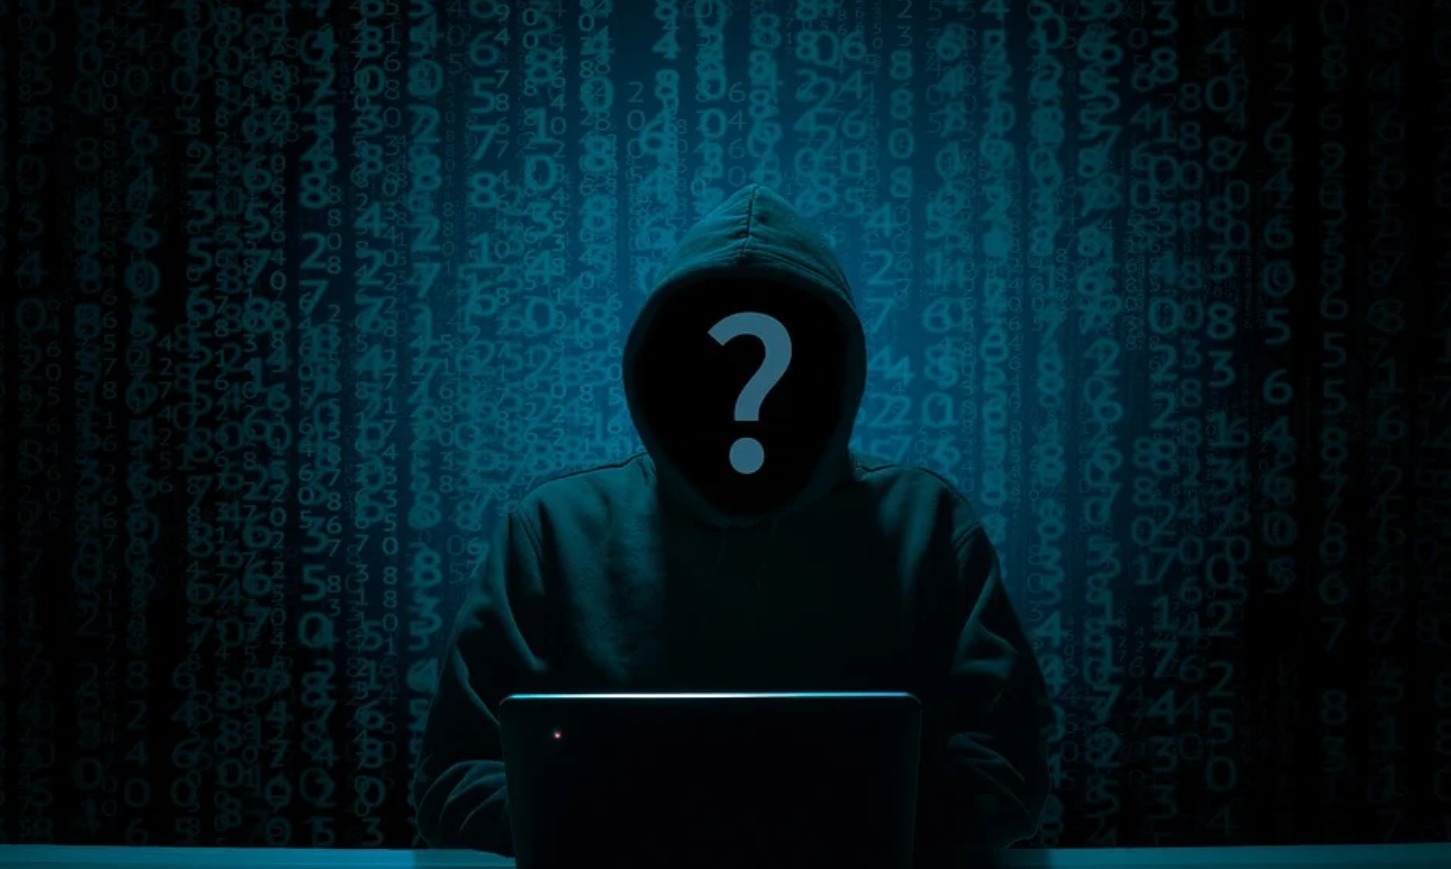 En France, les hackers ciblent de plus en plus les cabinets d'avocat. Pourquoi ?